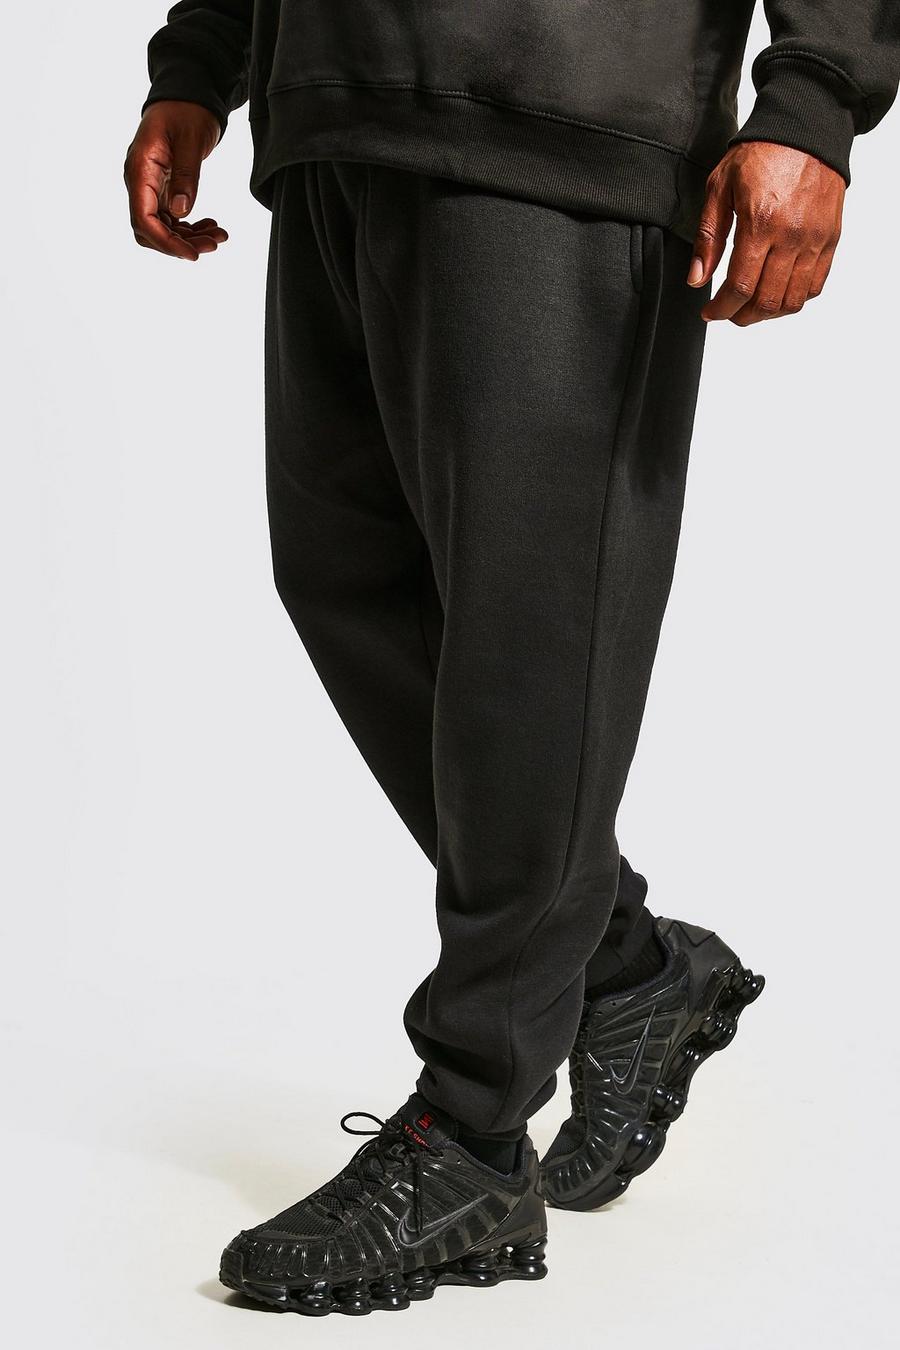 שחור negro מכנסי ריצה בייסיק סקיני עם הדפס למידות גדולות